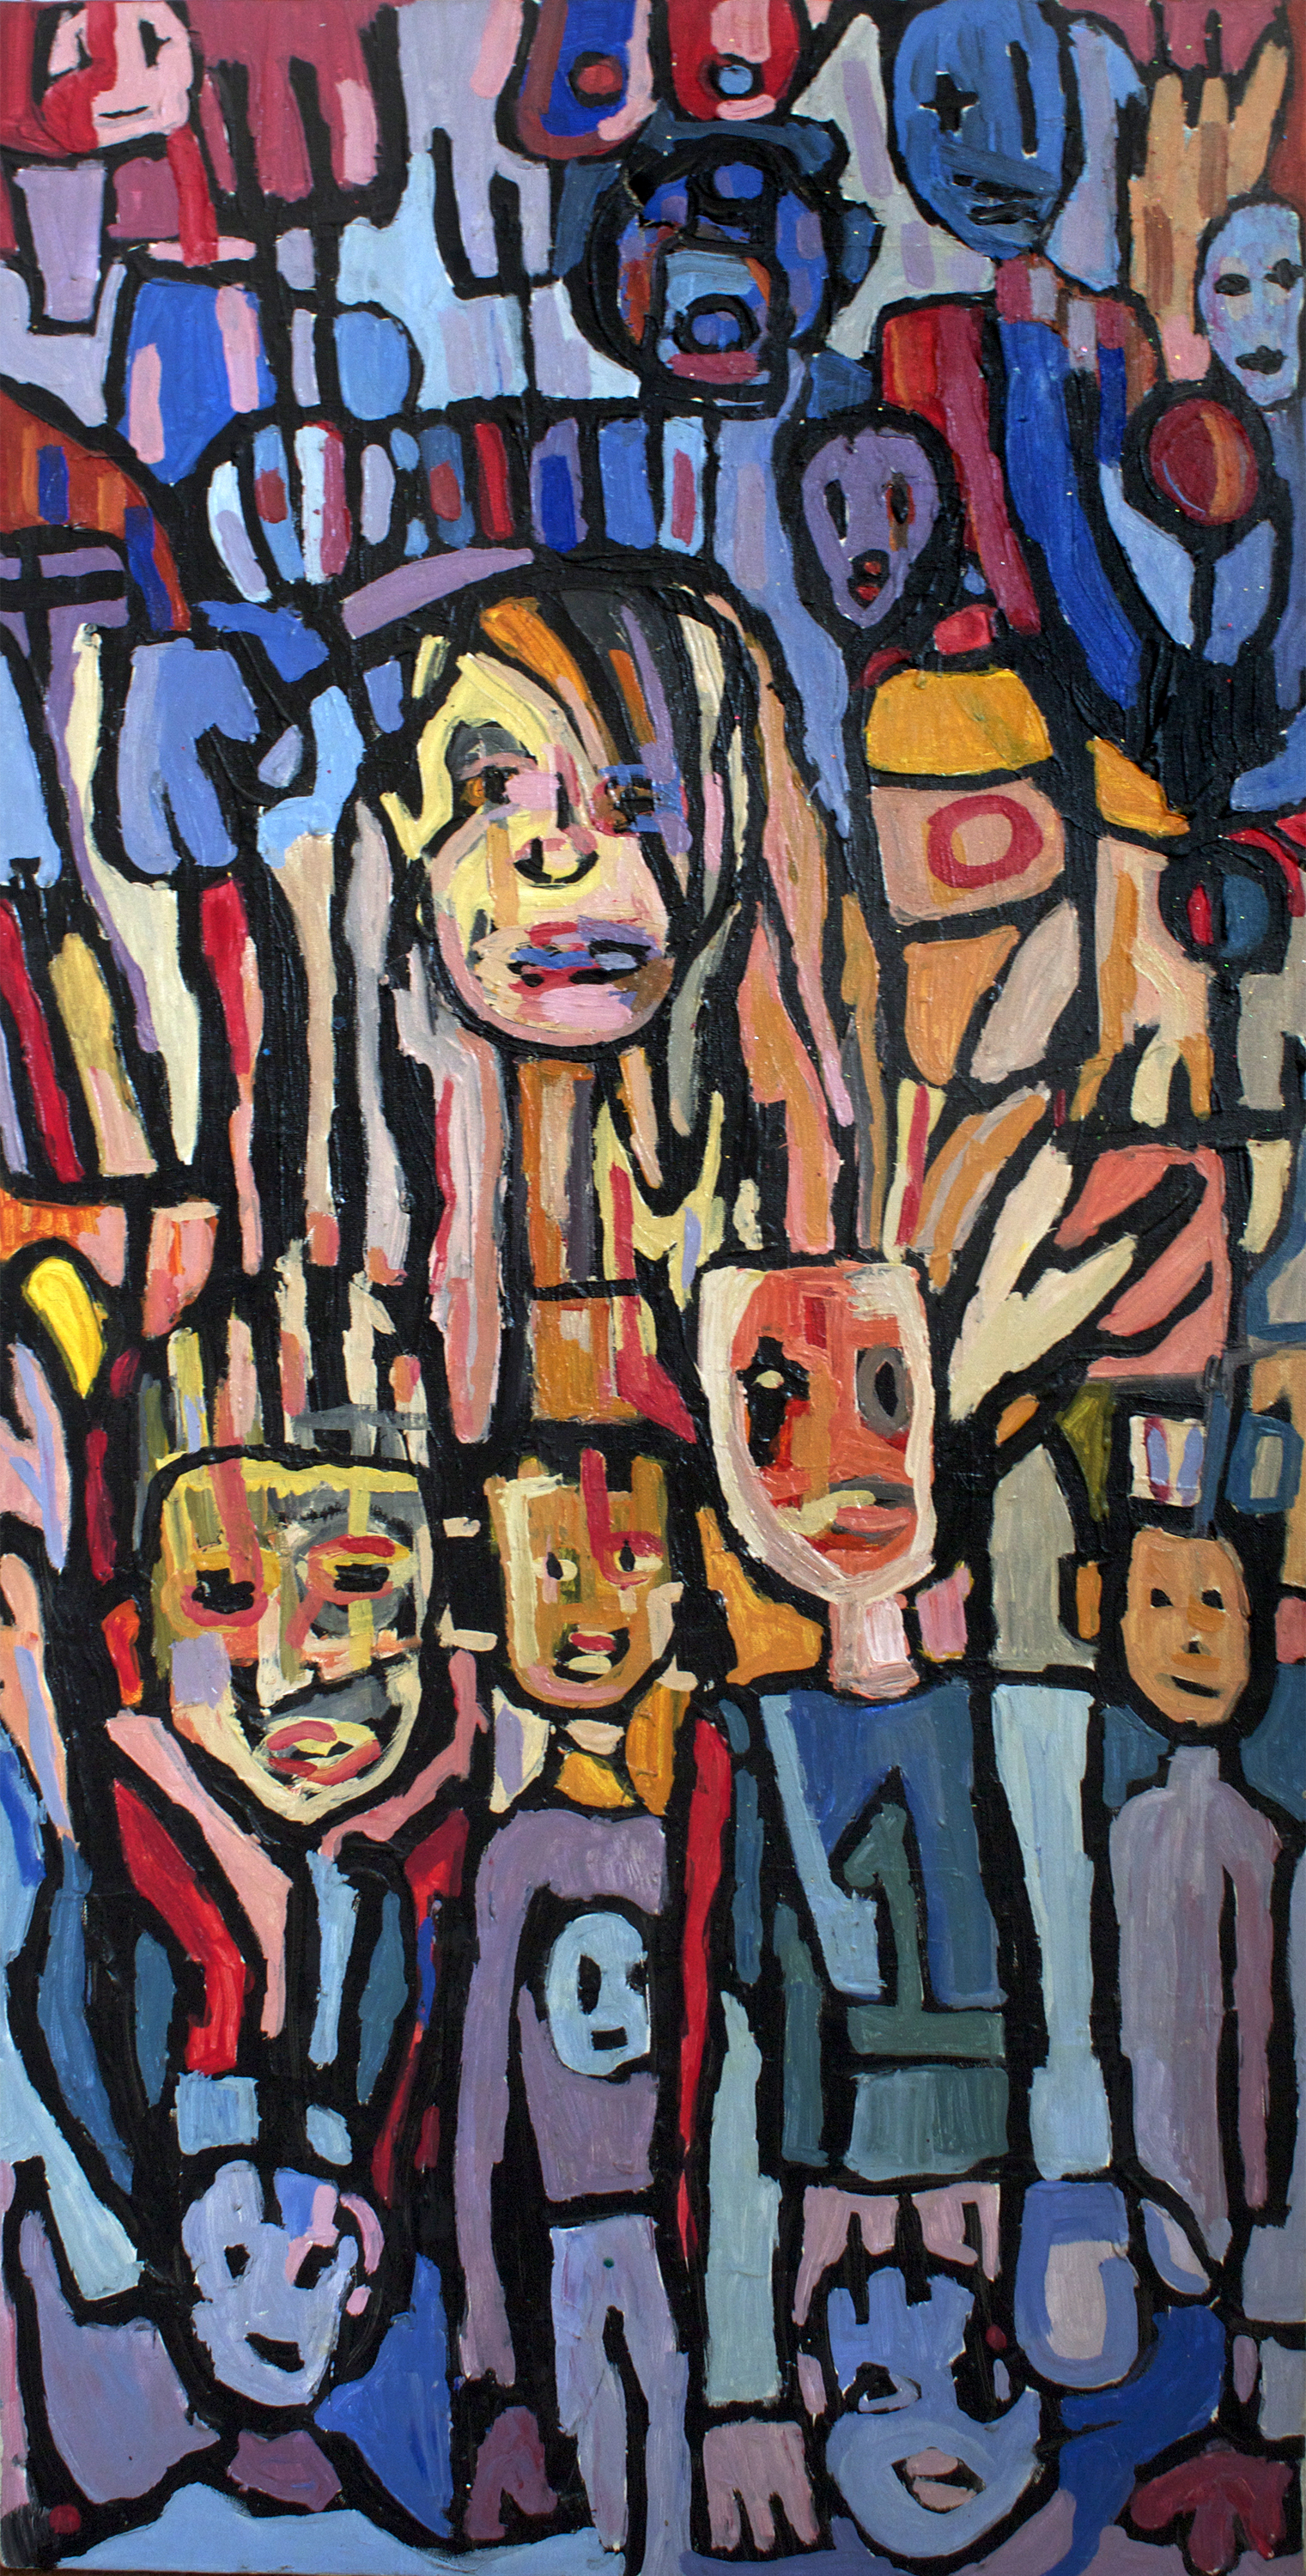                 2001/Monkeyboy, acrylic on canvas, 4x2ft, 2001 